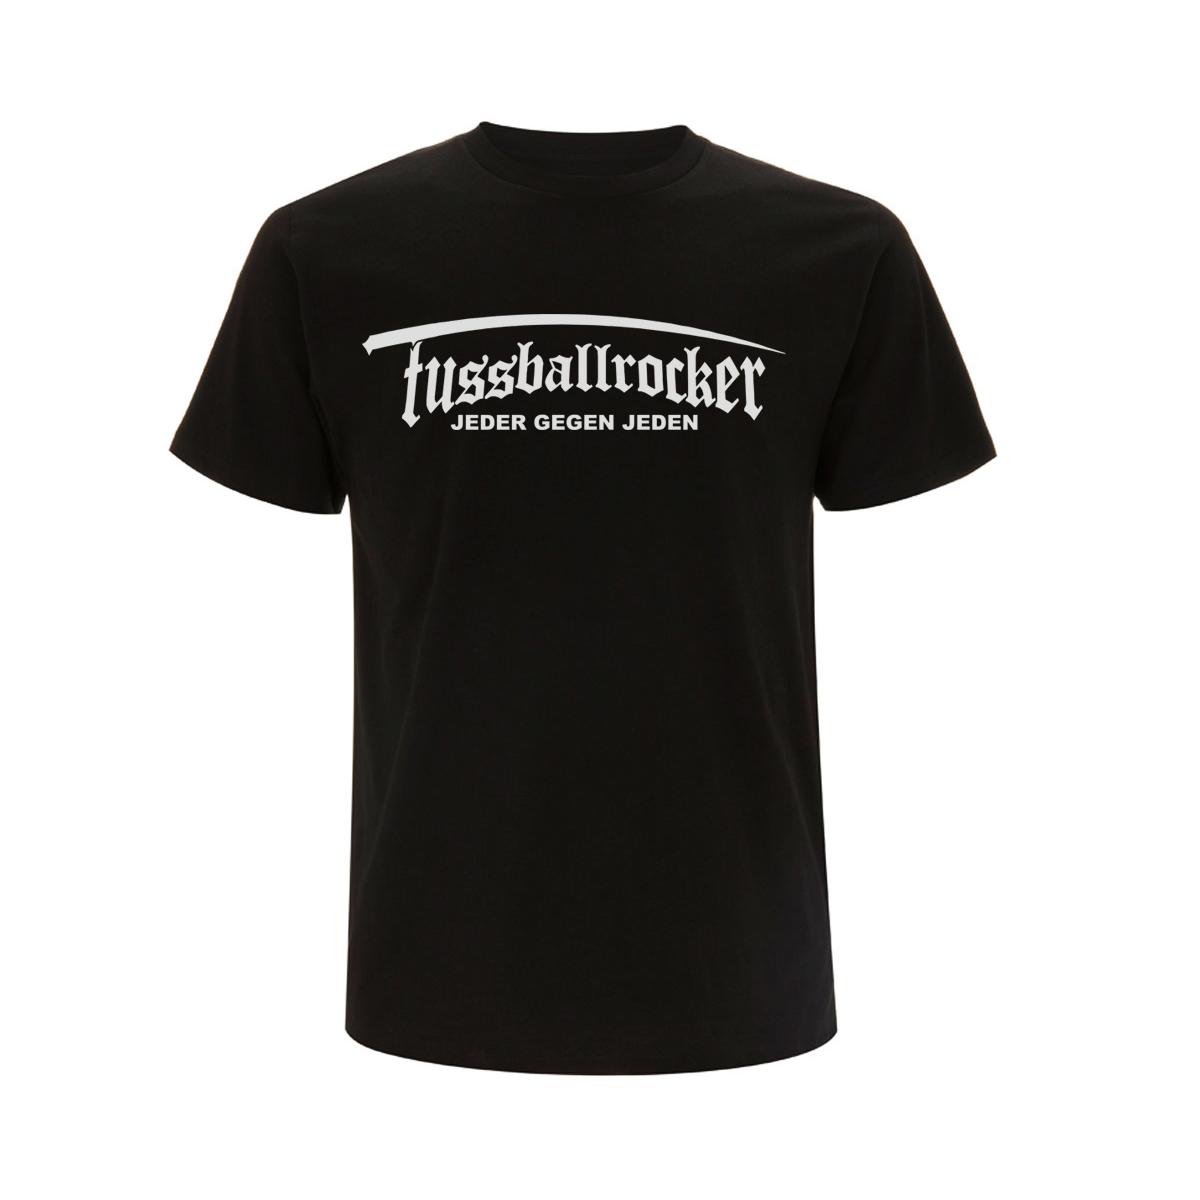 Fußballrocker - Schriftzug - Männer T-Shirt - schwarz